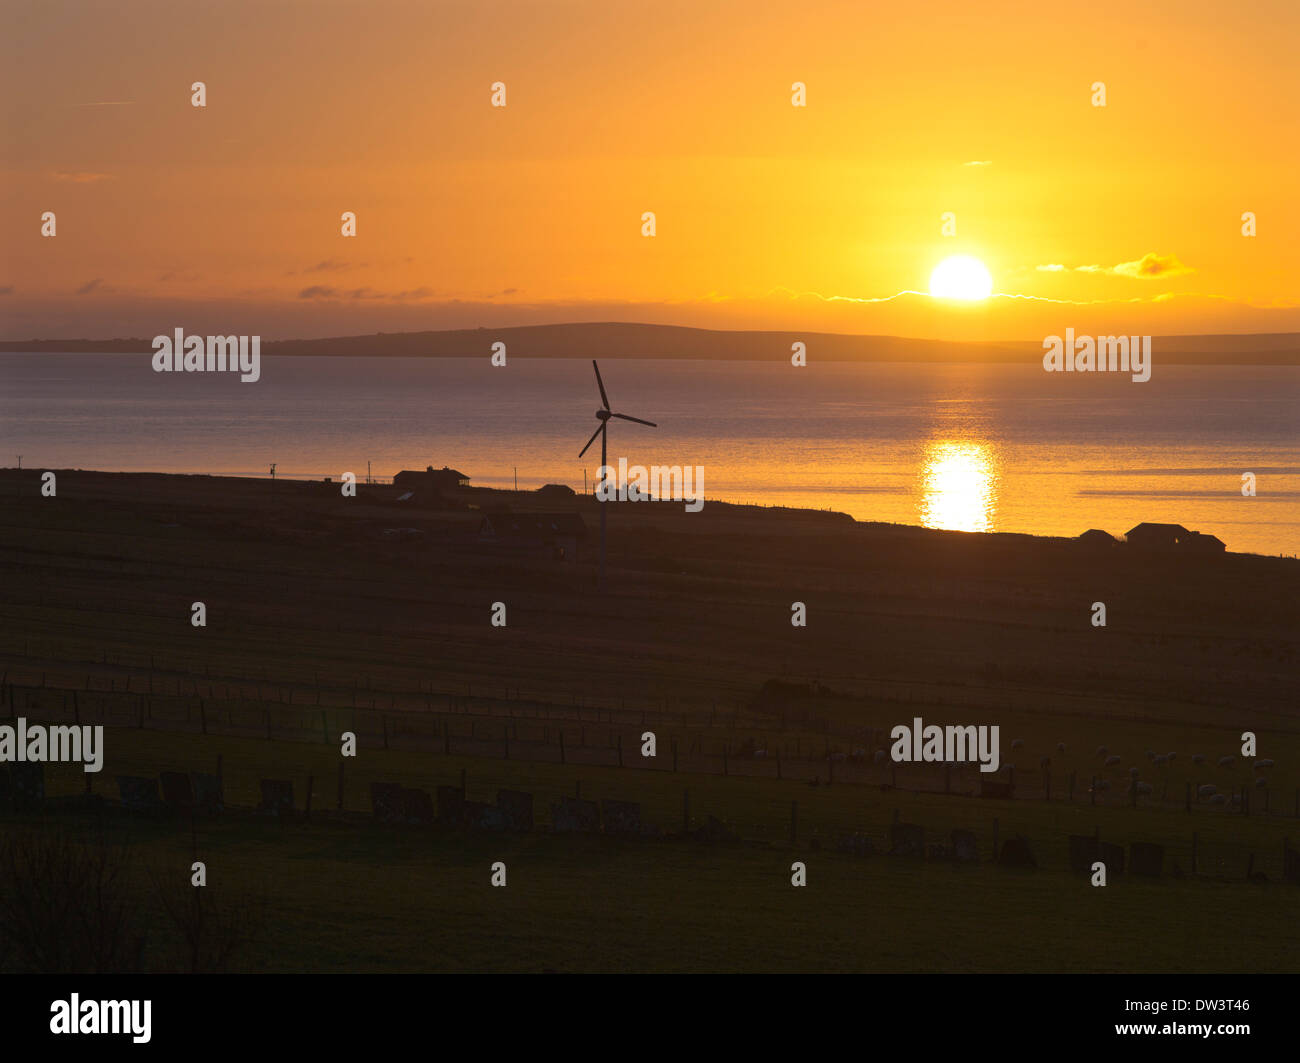 dh Scapa Flow ORPHIR ORKNEY Sunrise éolienne cottages mer royaume-uni écosse lever le soleil de dawn house au-dessus du champ Banque D'Images